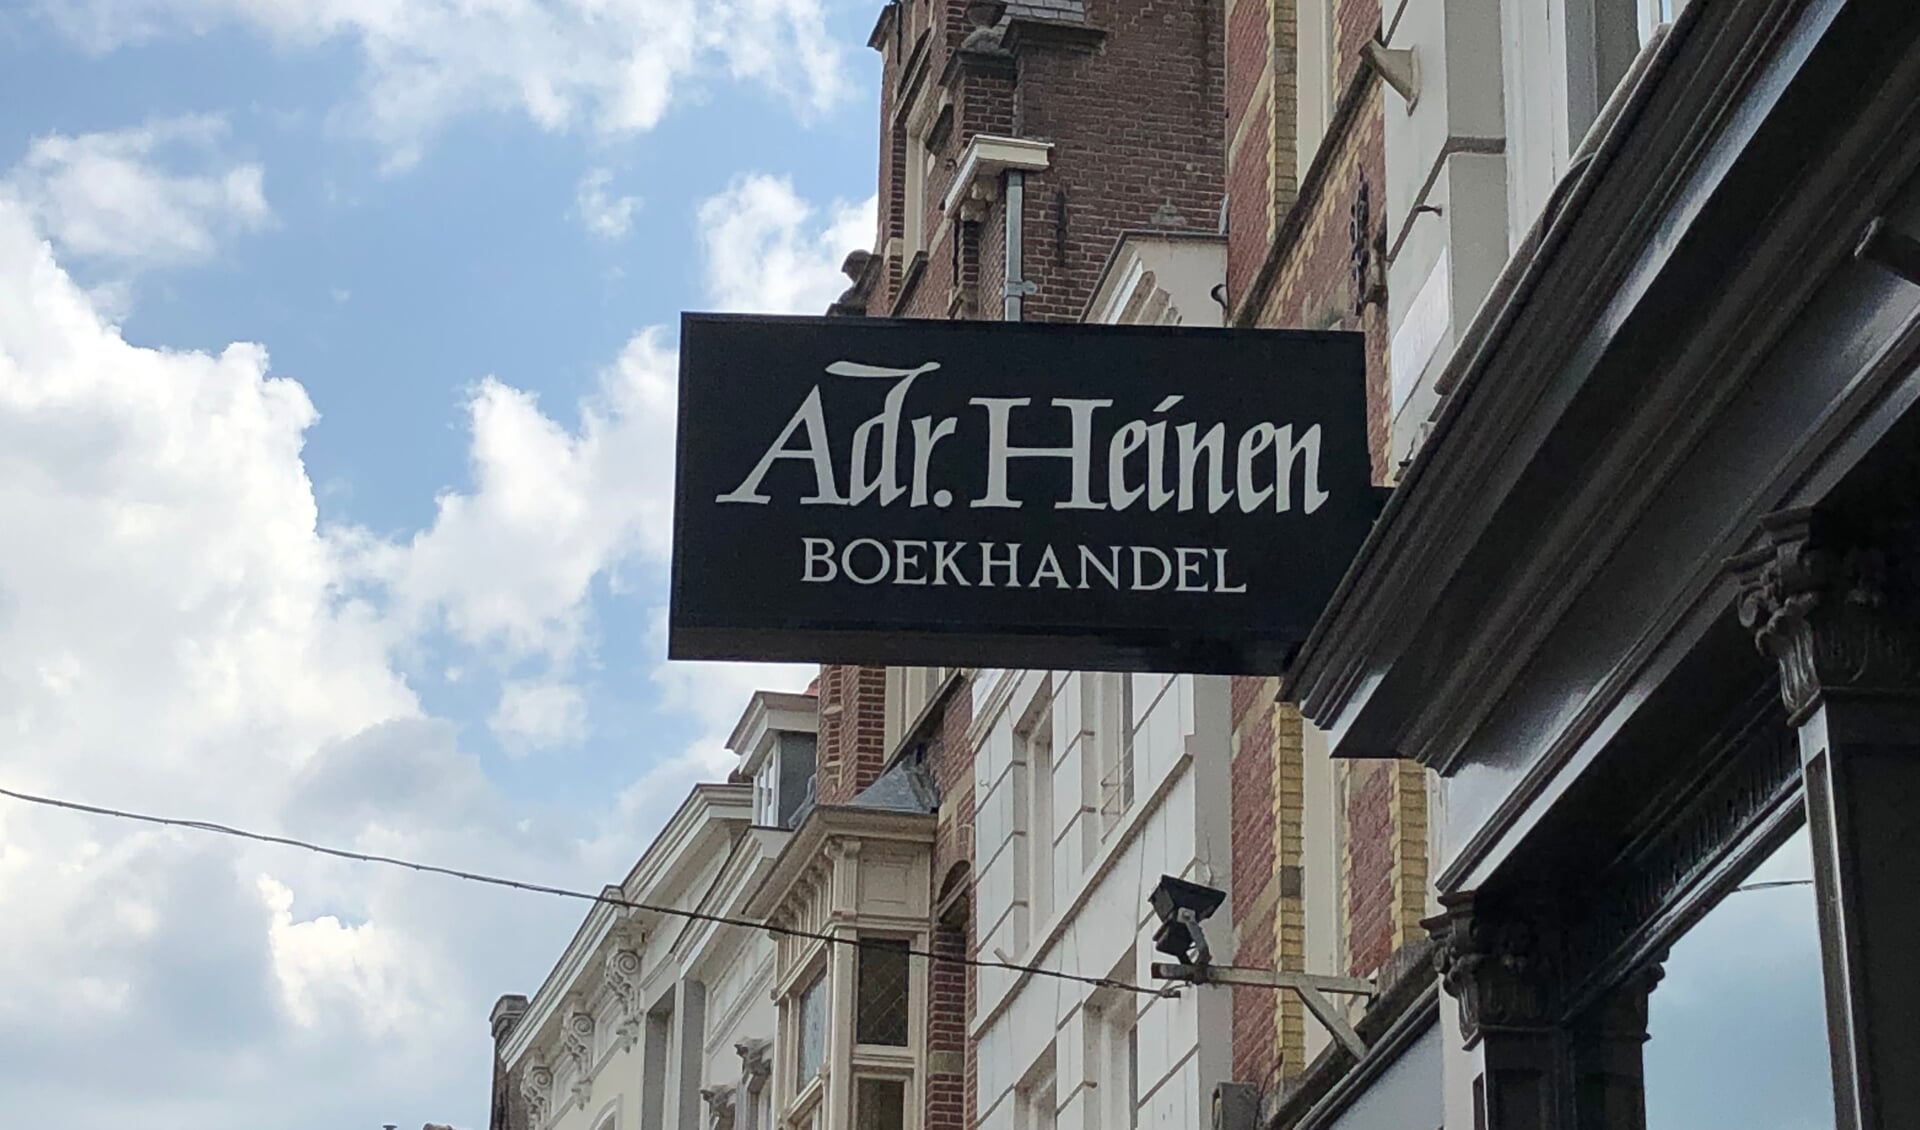 Boekhandel Adr. Heinen in de Kerkstraat in Den Bosch.